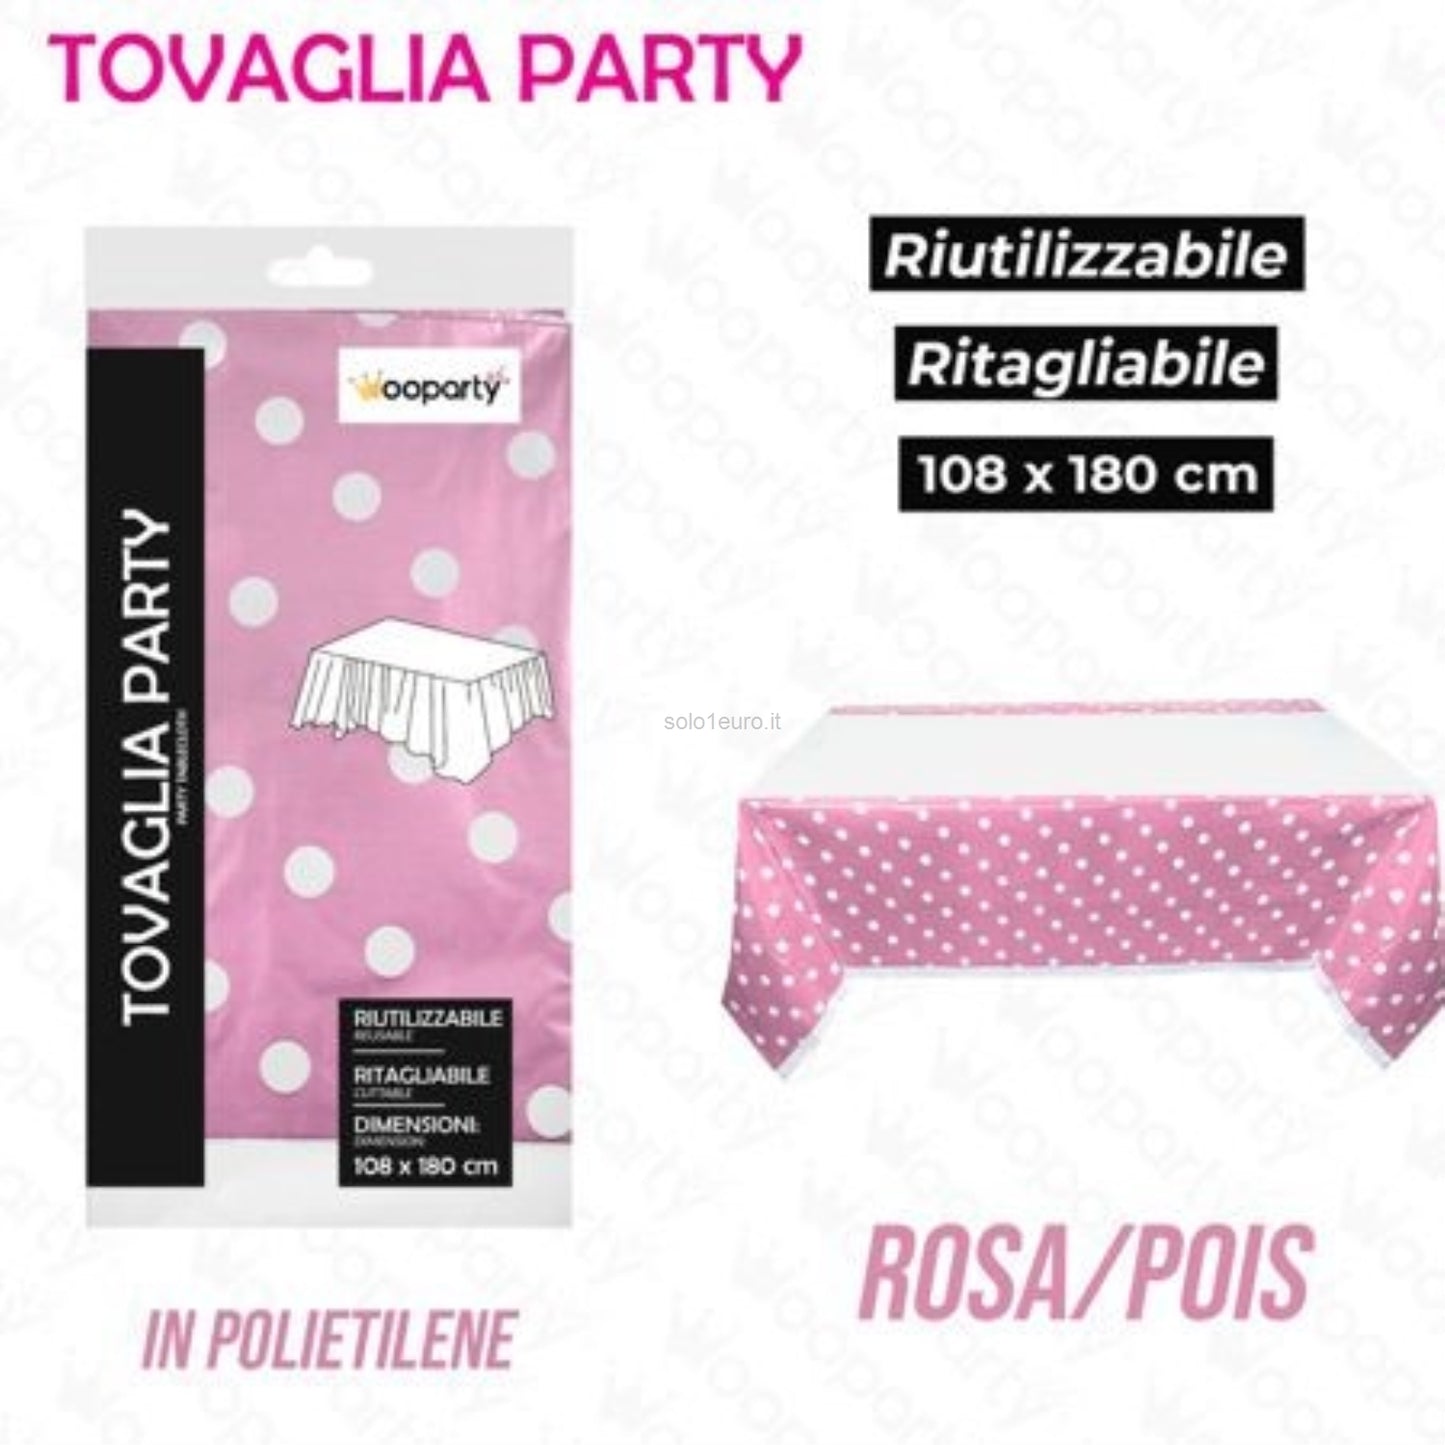 TOVAGLIA PARTY 108*180CM ROSA